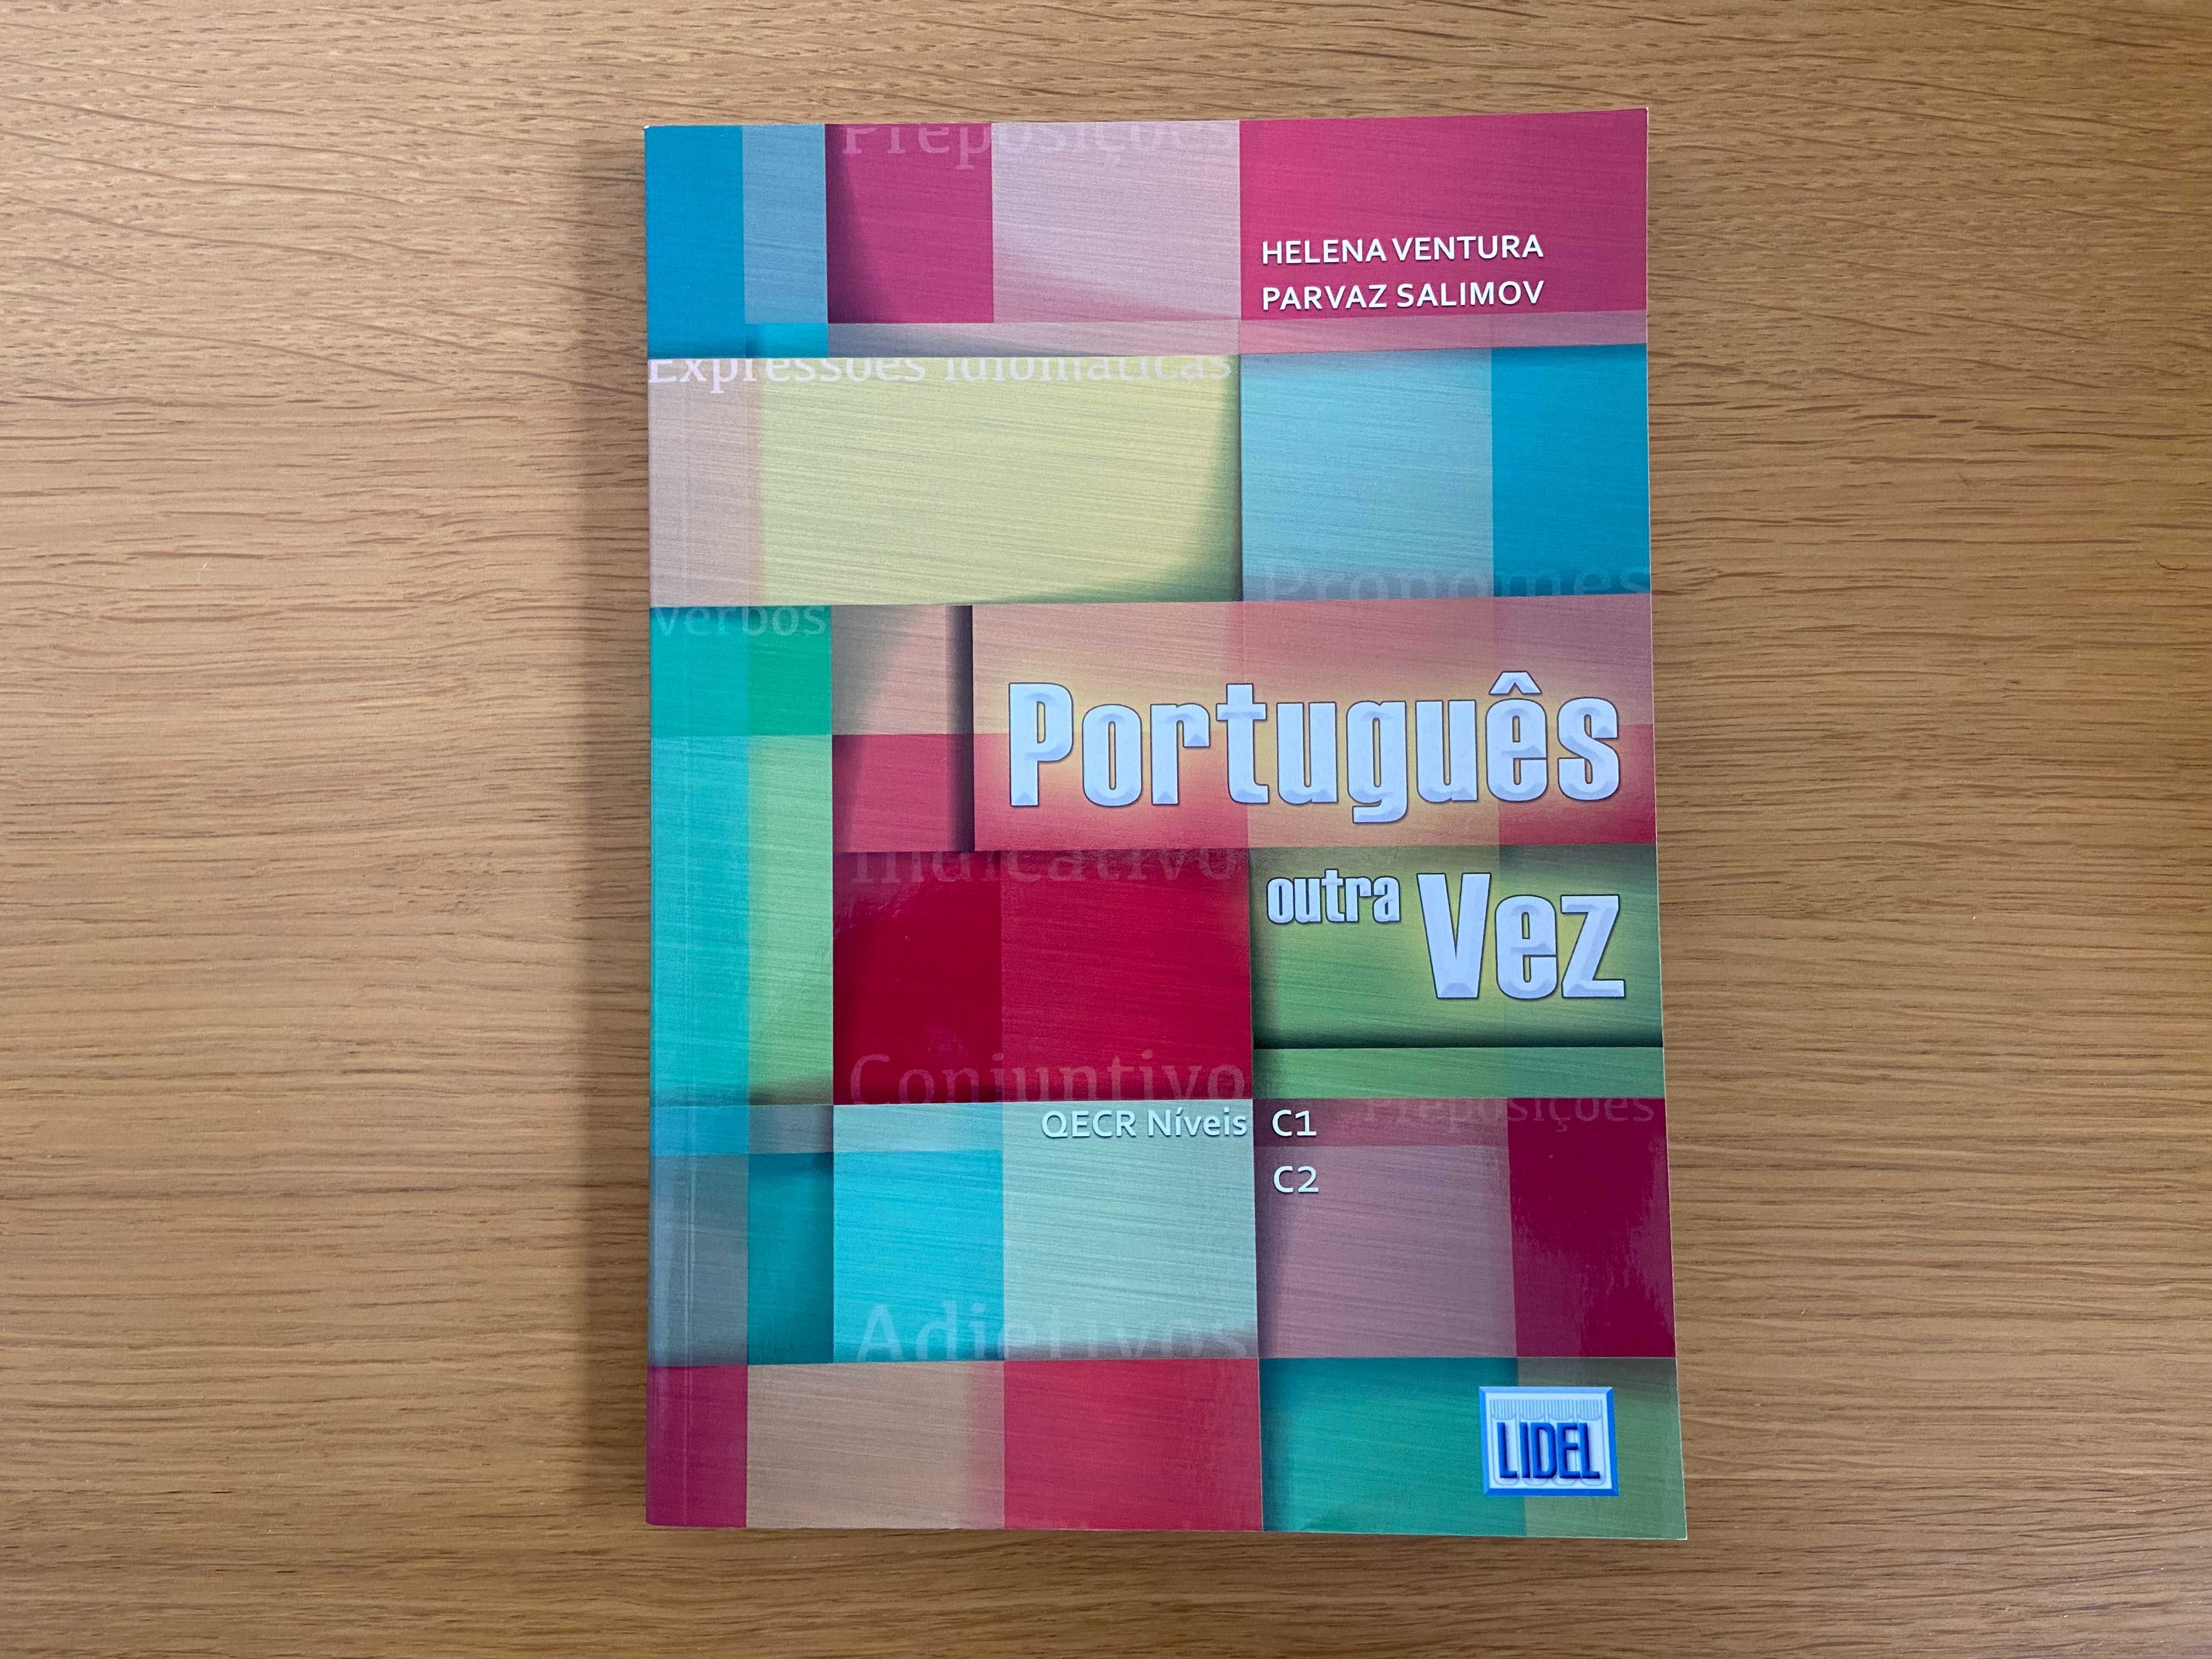 Livro "Português outra vez" (NOVO)